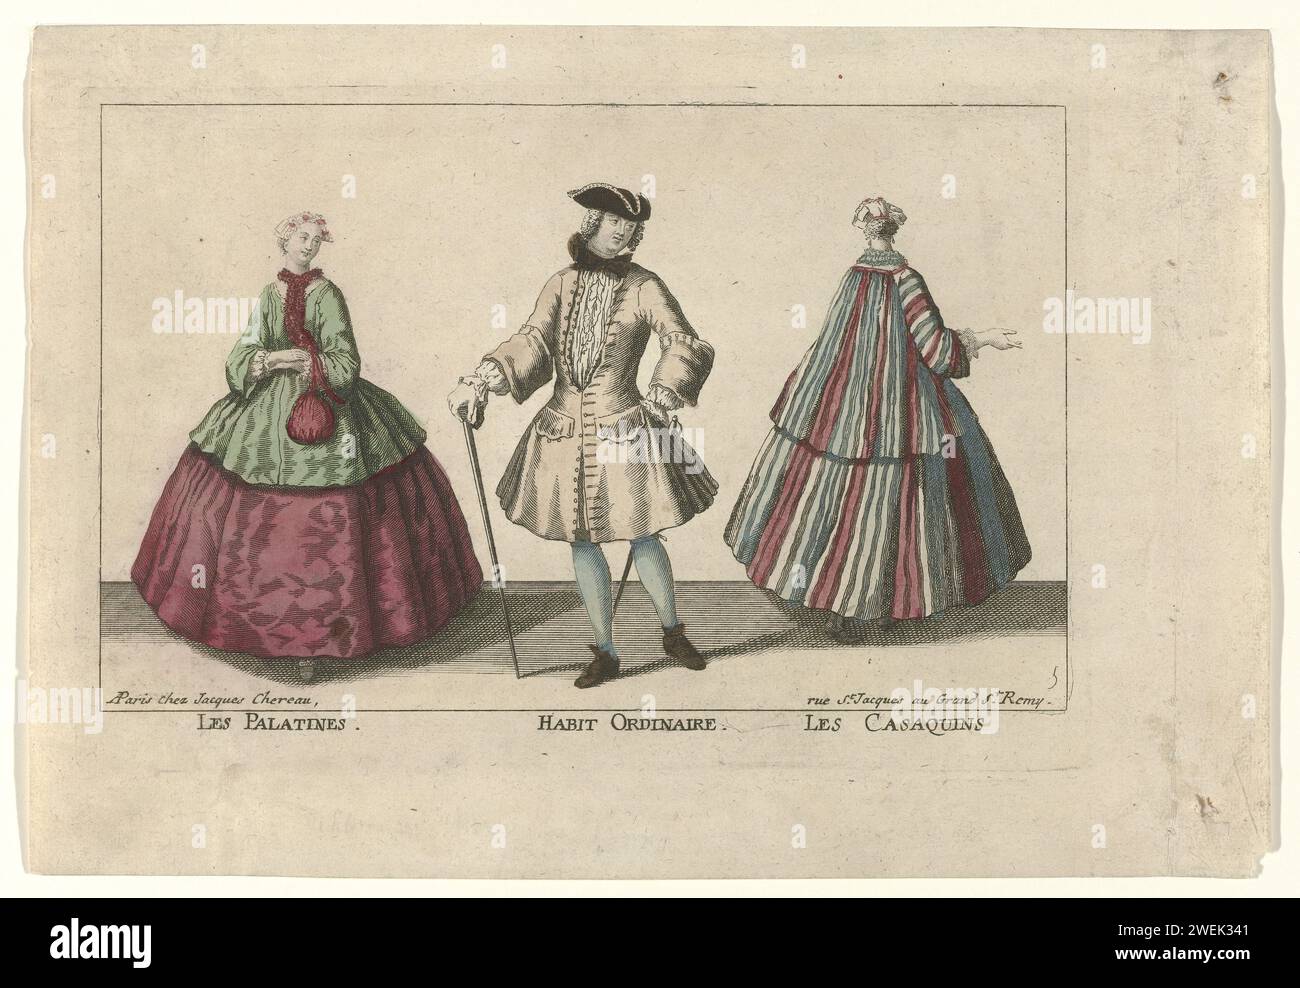 Palatinen. Gewöhnliche Gewohnheit. Die Casaquins, ca. 1730 von links nach rechts: Frau in einem grünen Casaquin und Purple Rock. Zubehör: Kleiner Hut, palatin, Tasche oder Tasche. Der Mann trägt ein Justaucorps, ein Hemd mit Jabot, eine Schleife um den Hals, Kniestrümpfe und Strümpfe. Zubehör: Drei Stiche, Gehstock, (Ziermaterial) Degen und Schuhe. Rechts eine Frau auf dem Rücken, in gestreiftem Casaquin und Rock aus demselben Stoff. Zubehör: Kleiner Hut, Ohrringe, eingeschalteter Streifen um den Hals, Strümpfe und Maultiere. Der Druck ist Teil einer Serie von 8 Kostümdrucken, die von Chéreau, Paris, CA, herausgegeben wurden. 1730. Kopie, Stockfoto